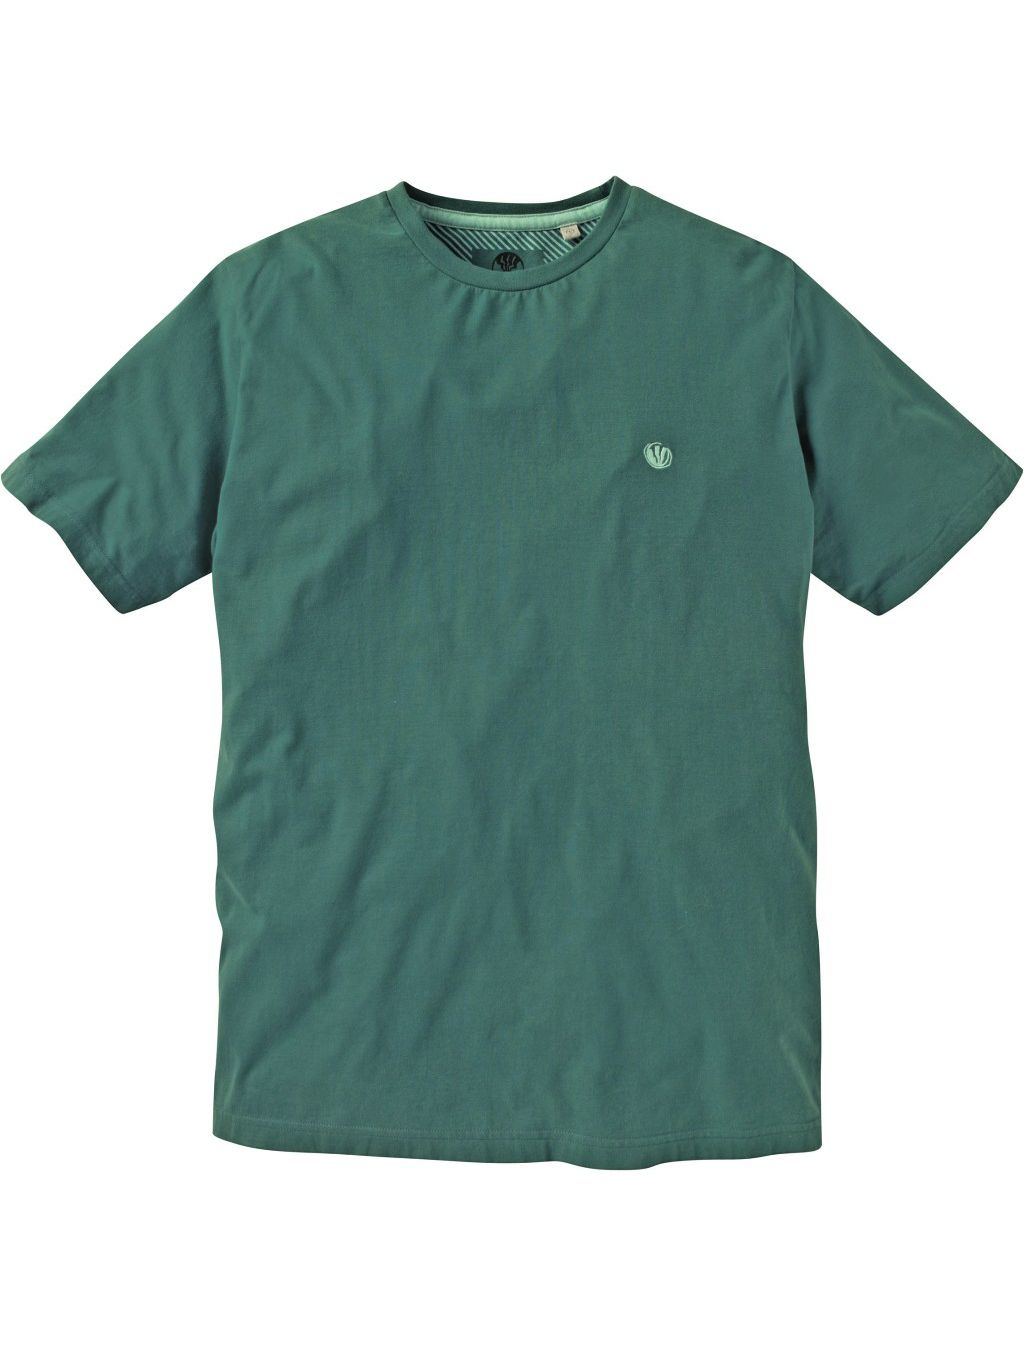 Fat Face Original Crew Neck T-Shirt, Green